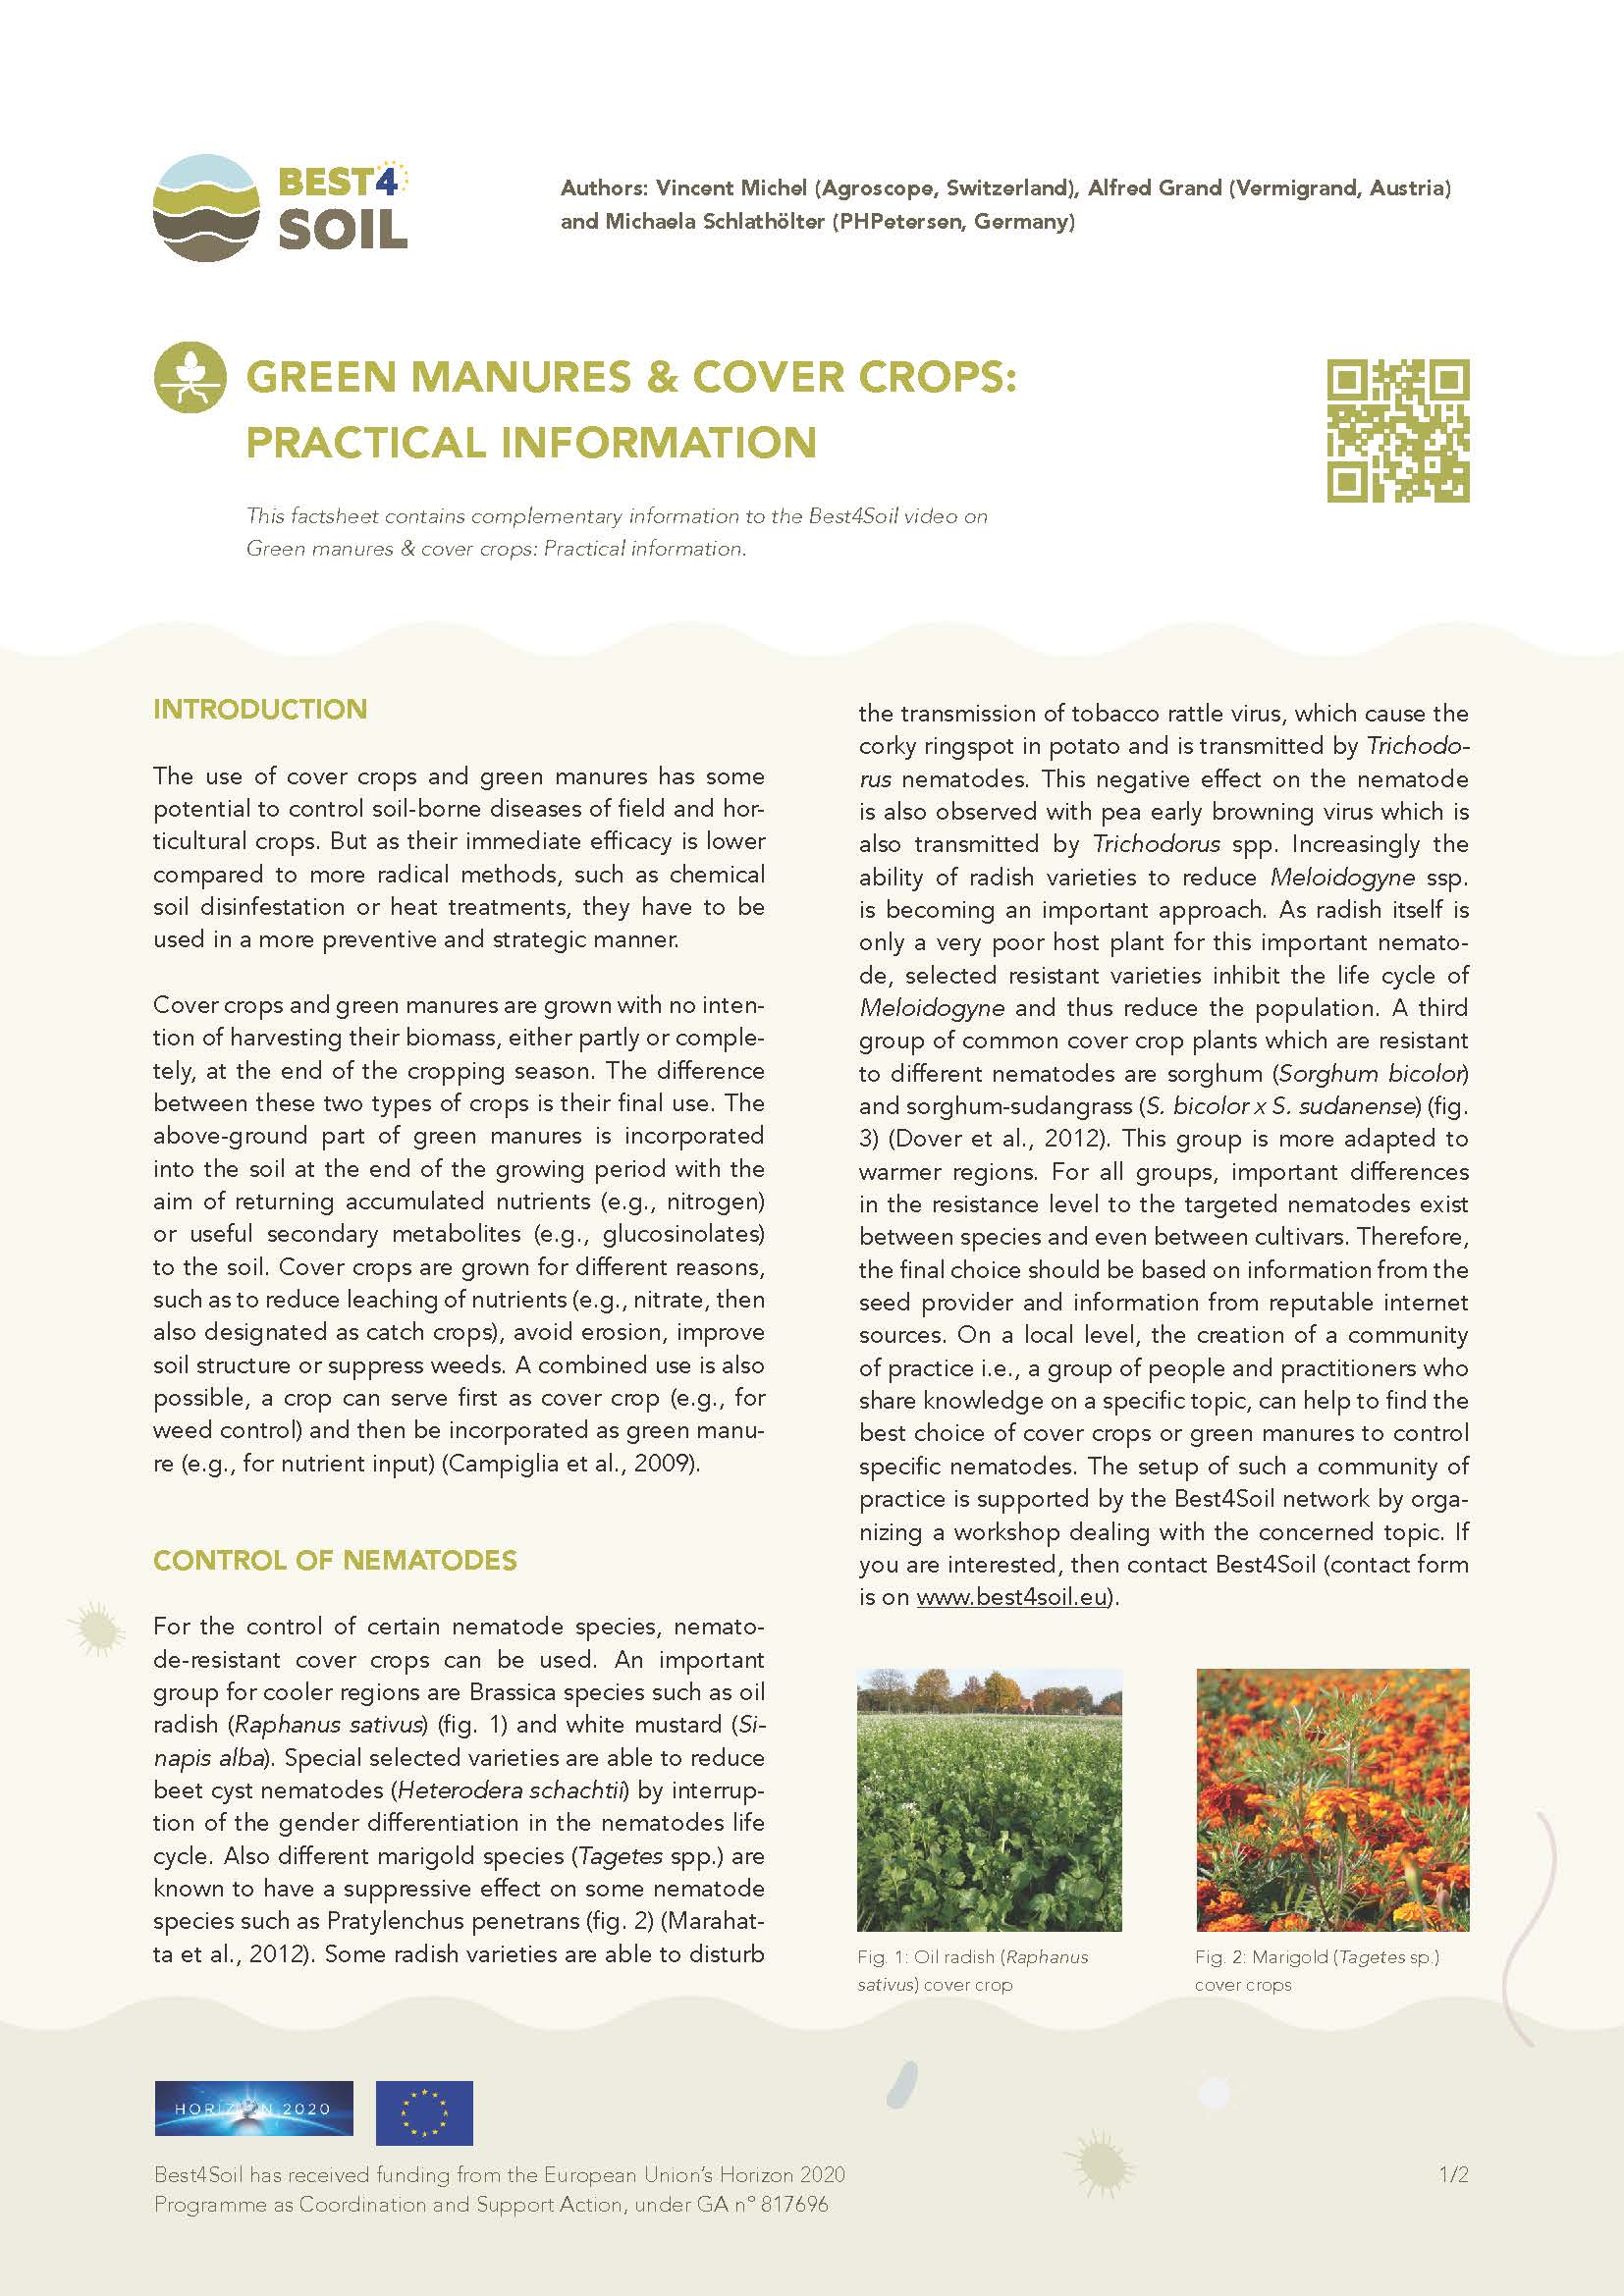 Zöldtrágya és takarónövények: gyakorlati információk (Best4Soil adatlap)